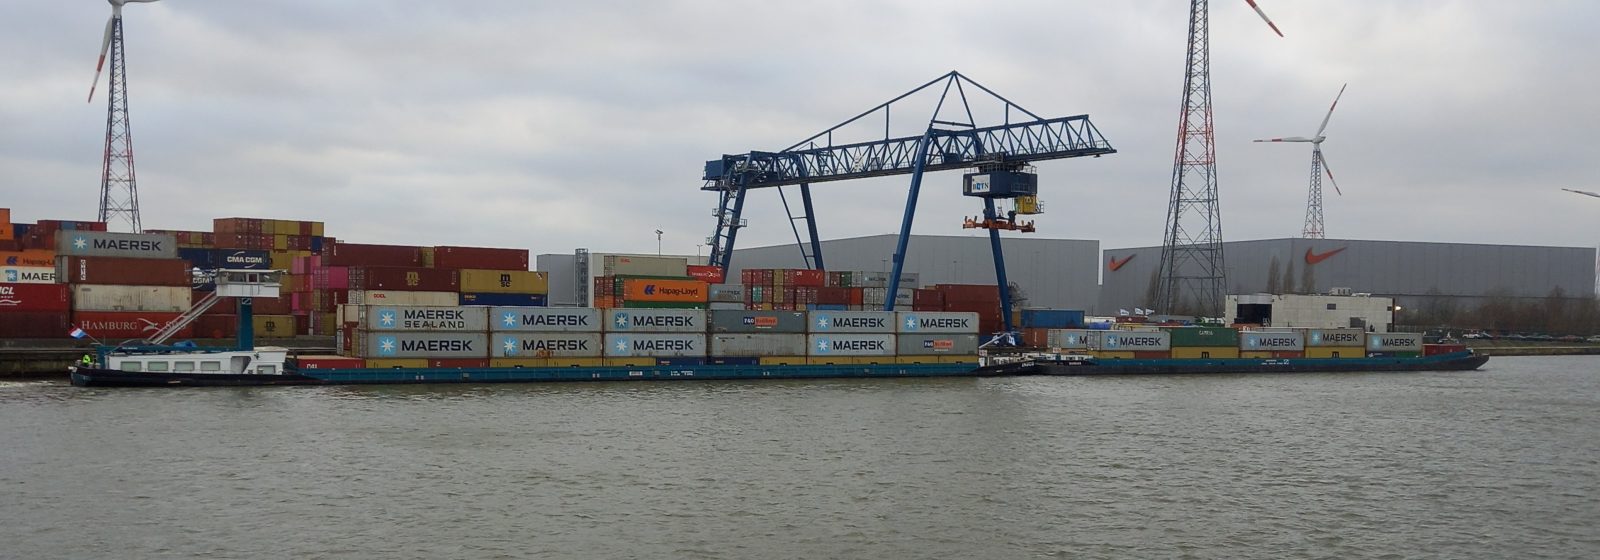 Duwkonvooi met vier lagen containers verlaat de terminal richting Antwerpen.